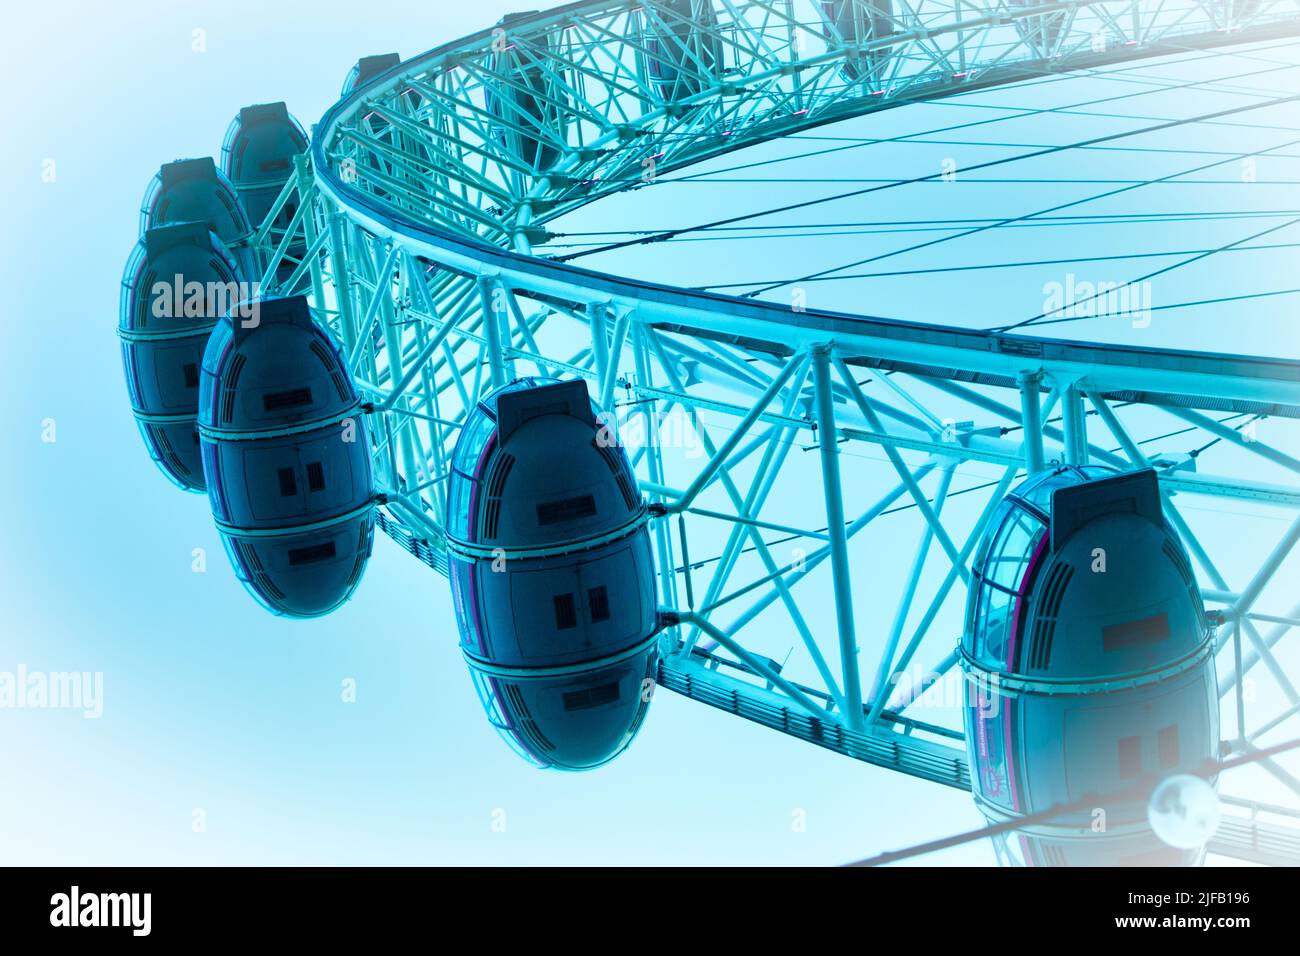 London Eye in blu, il London Eye è un'attrazione popolare a Londra, la capitale dell'Inghilterra Foto Stock